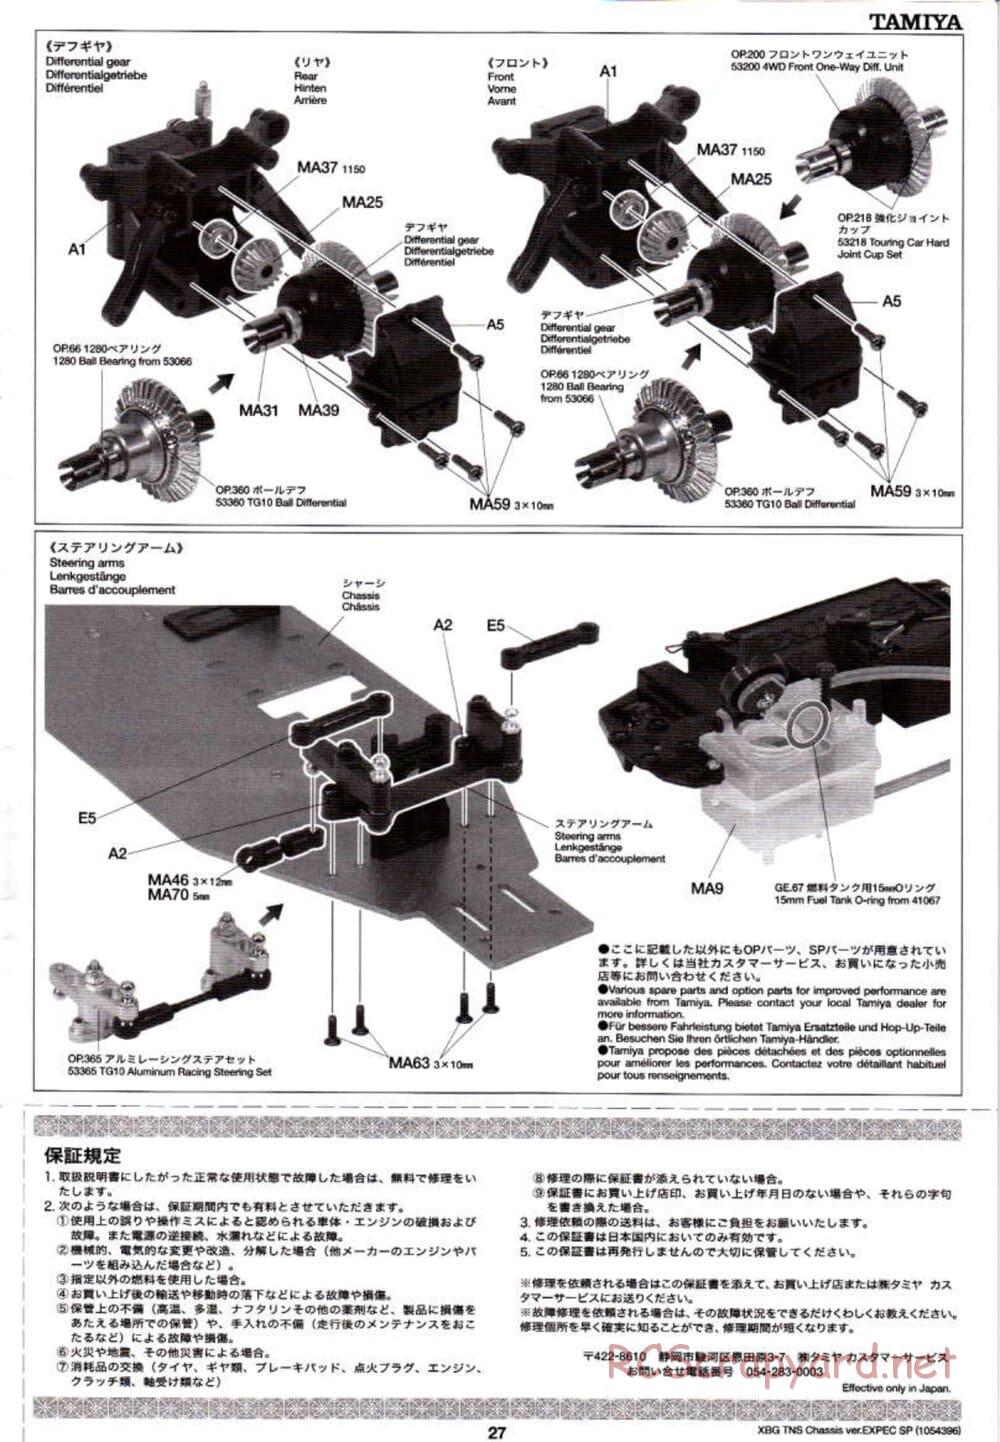 Tamiya - TNS Chassis - Manual - Page 27